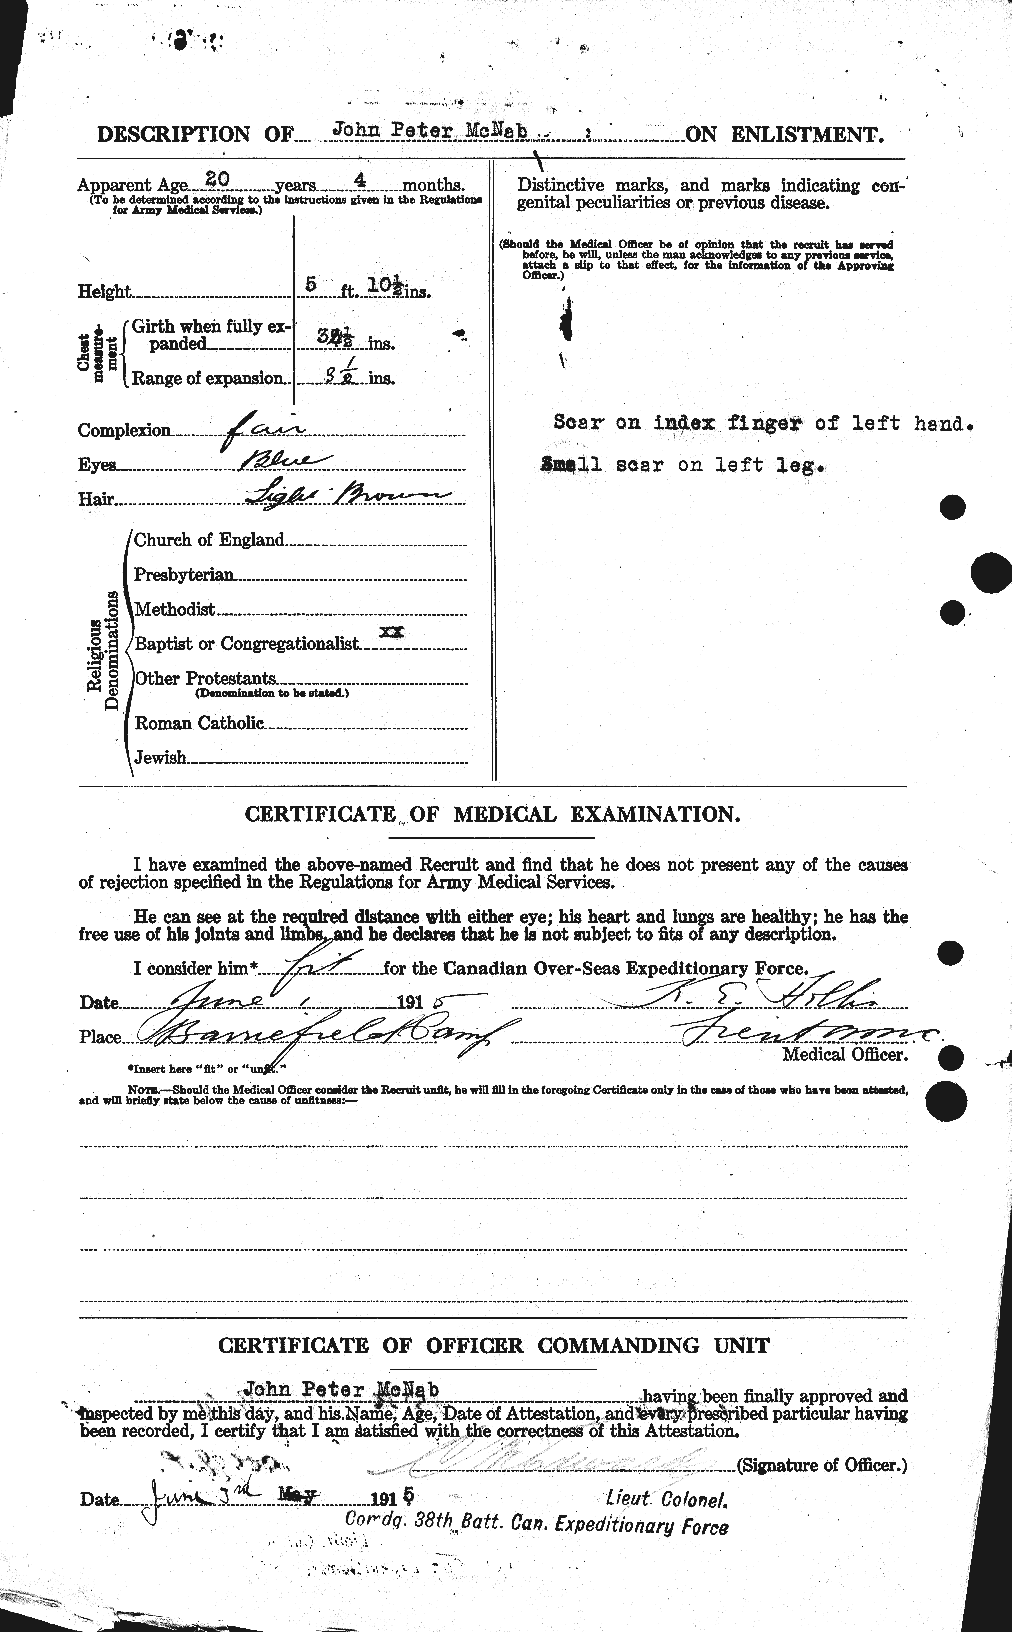 Dossiers du Personnel de la Première Guerre mondiale - CEC 539574b